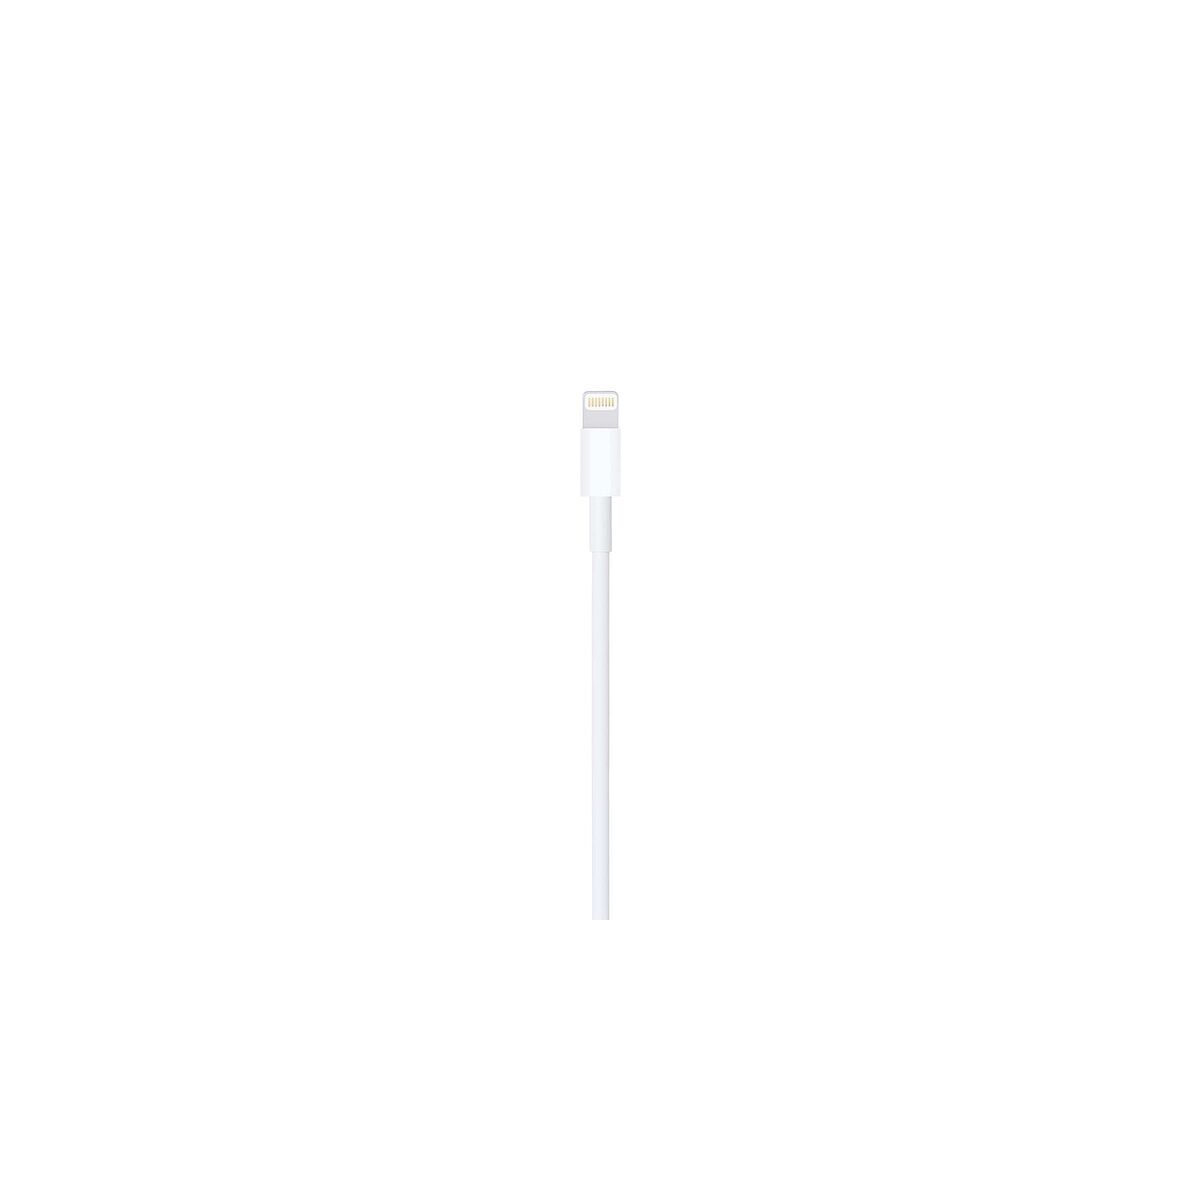 Kép 2/3 - Apple Lightning-USB kábel 1m, fehér EU MXLY2ZM/A